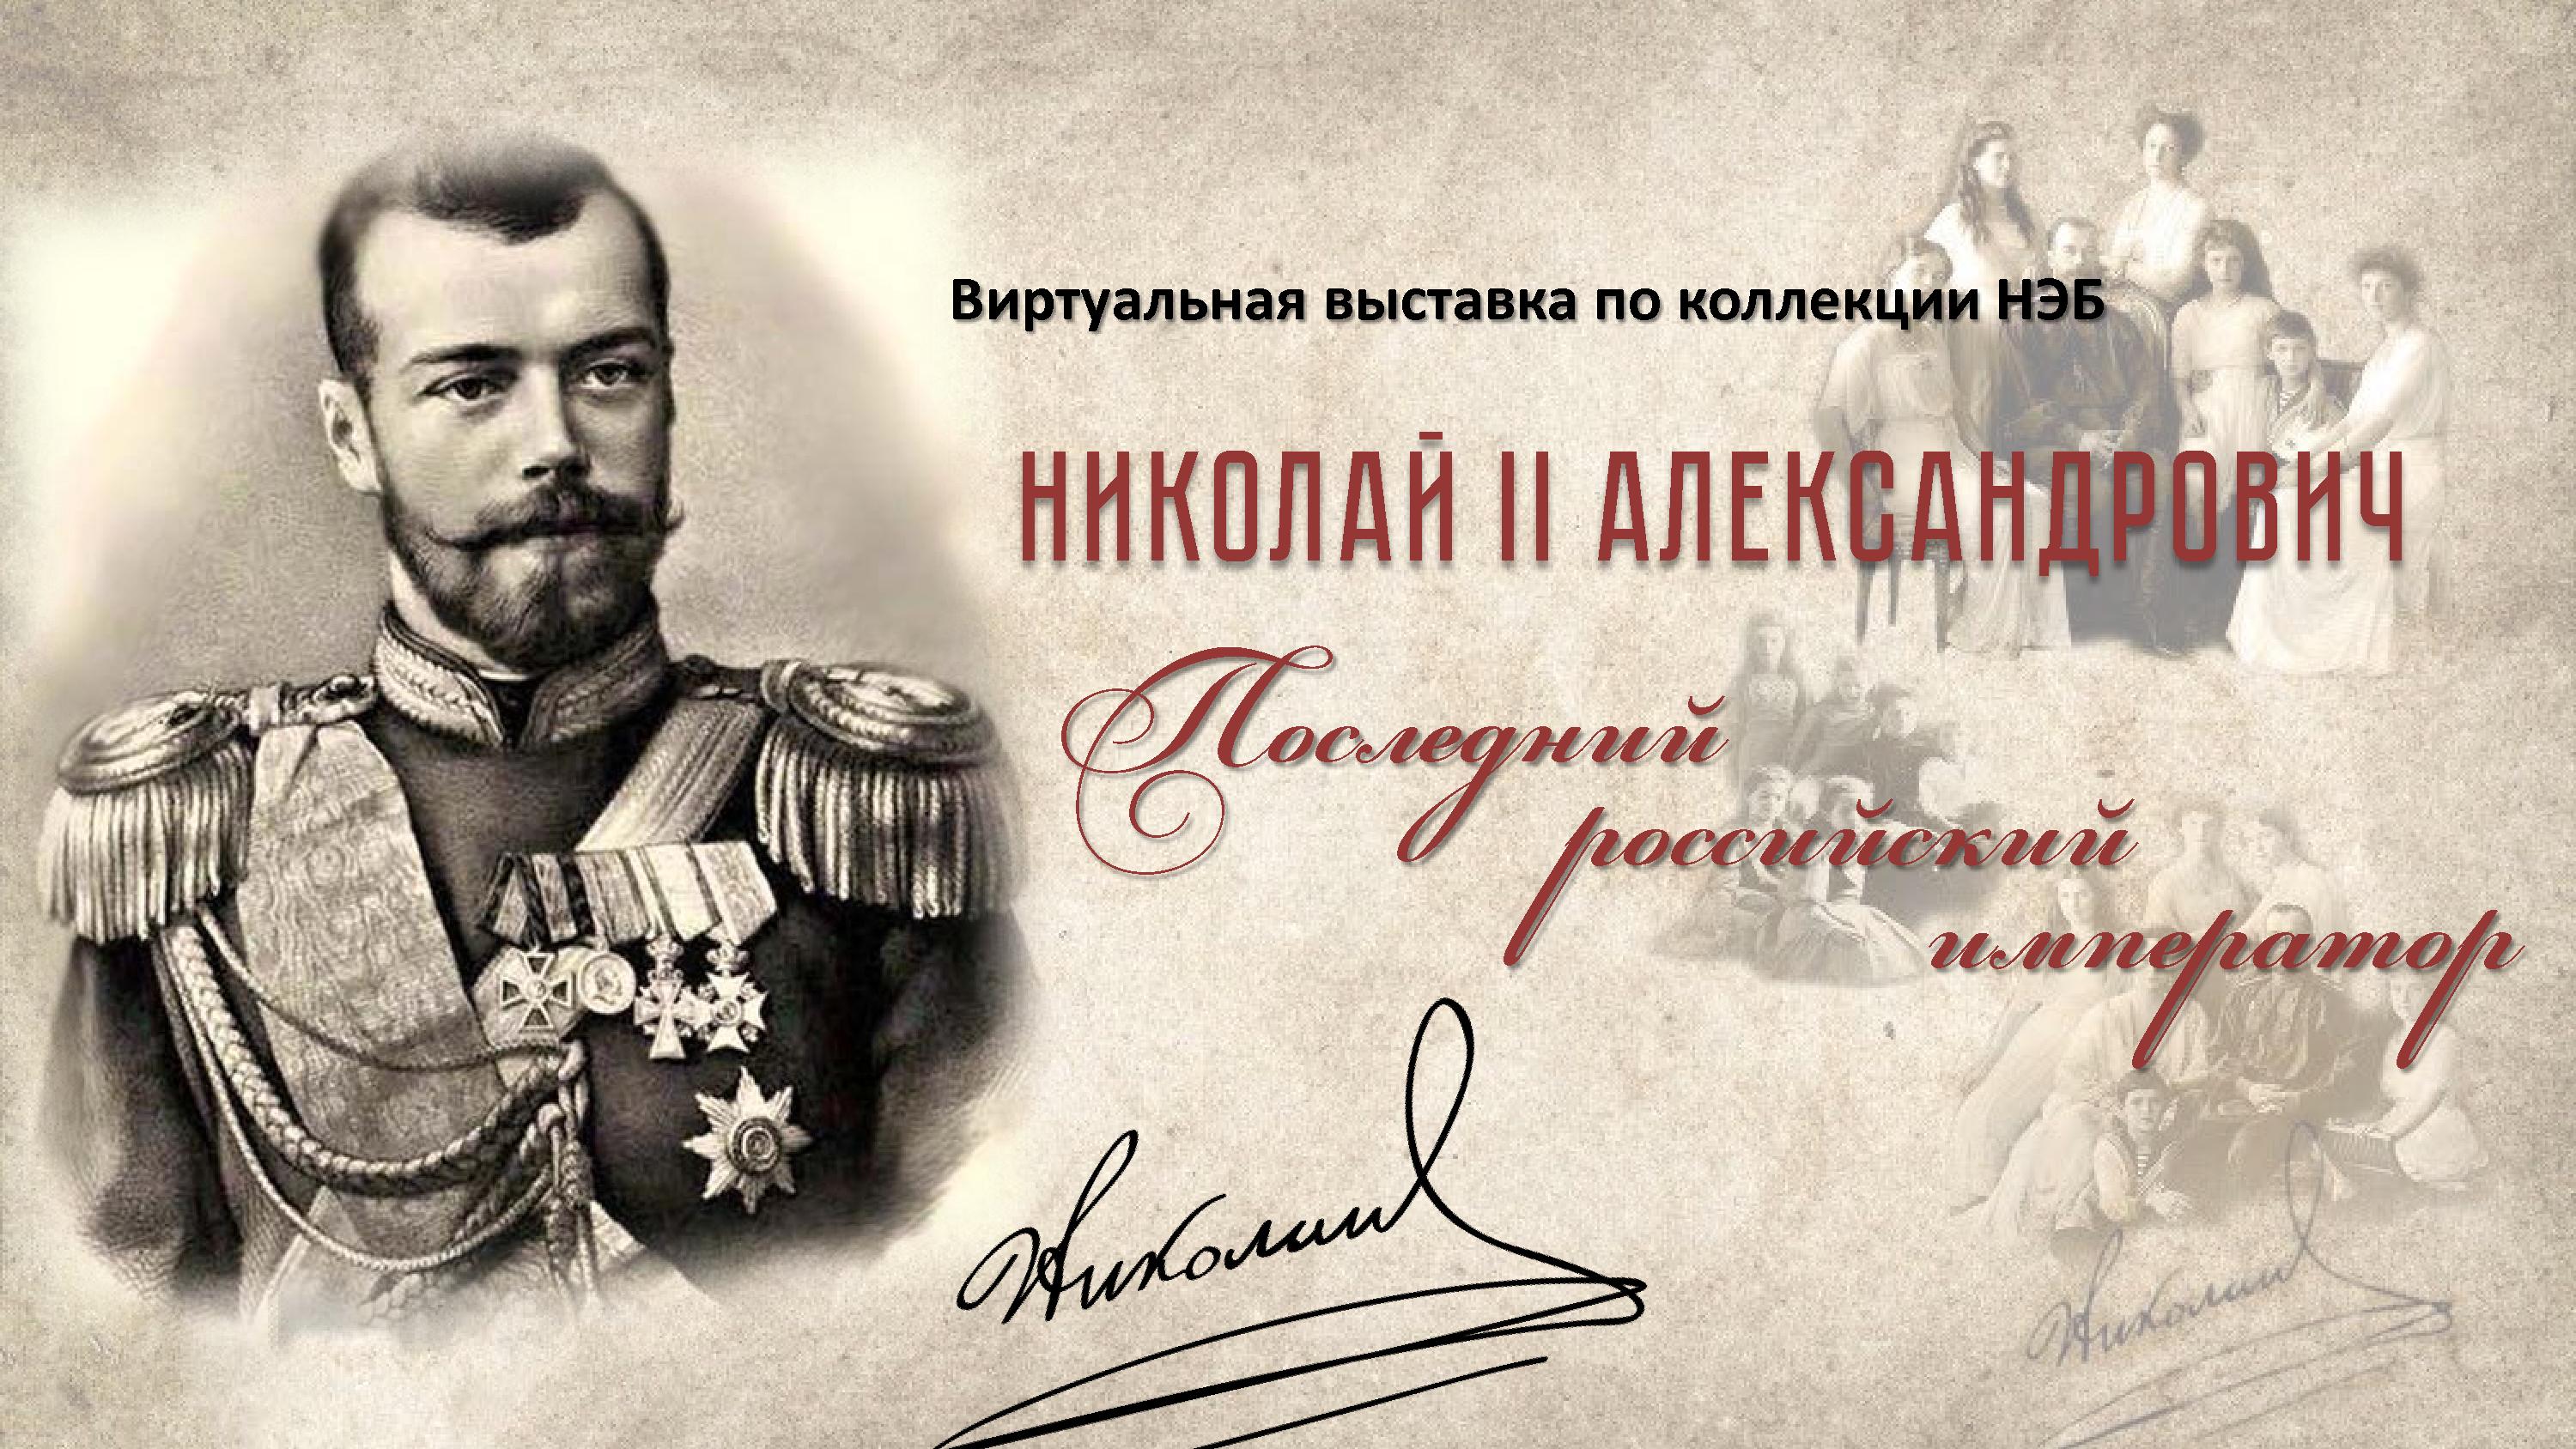 Виртуальная выставка "Николай II - последний российский император"